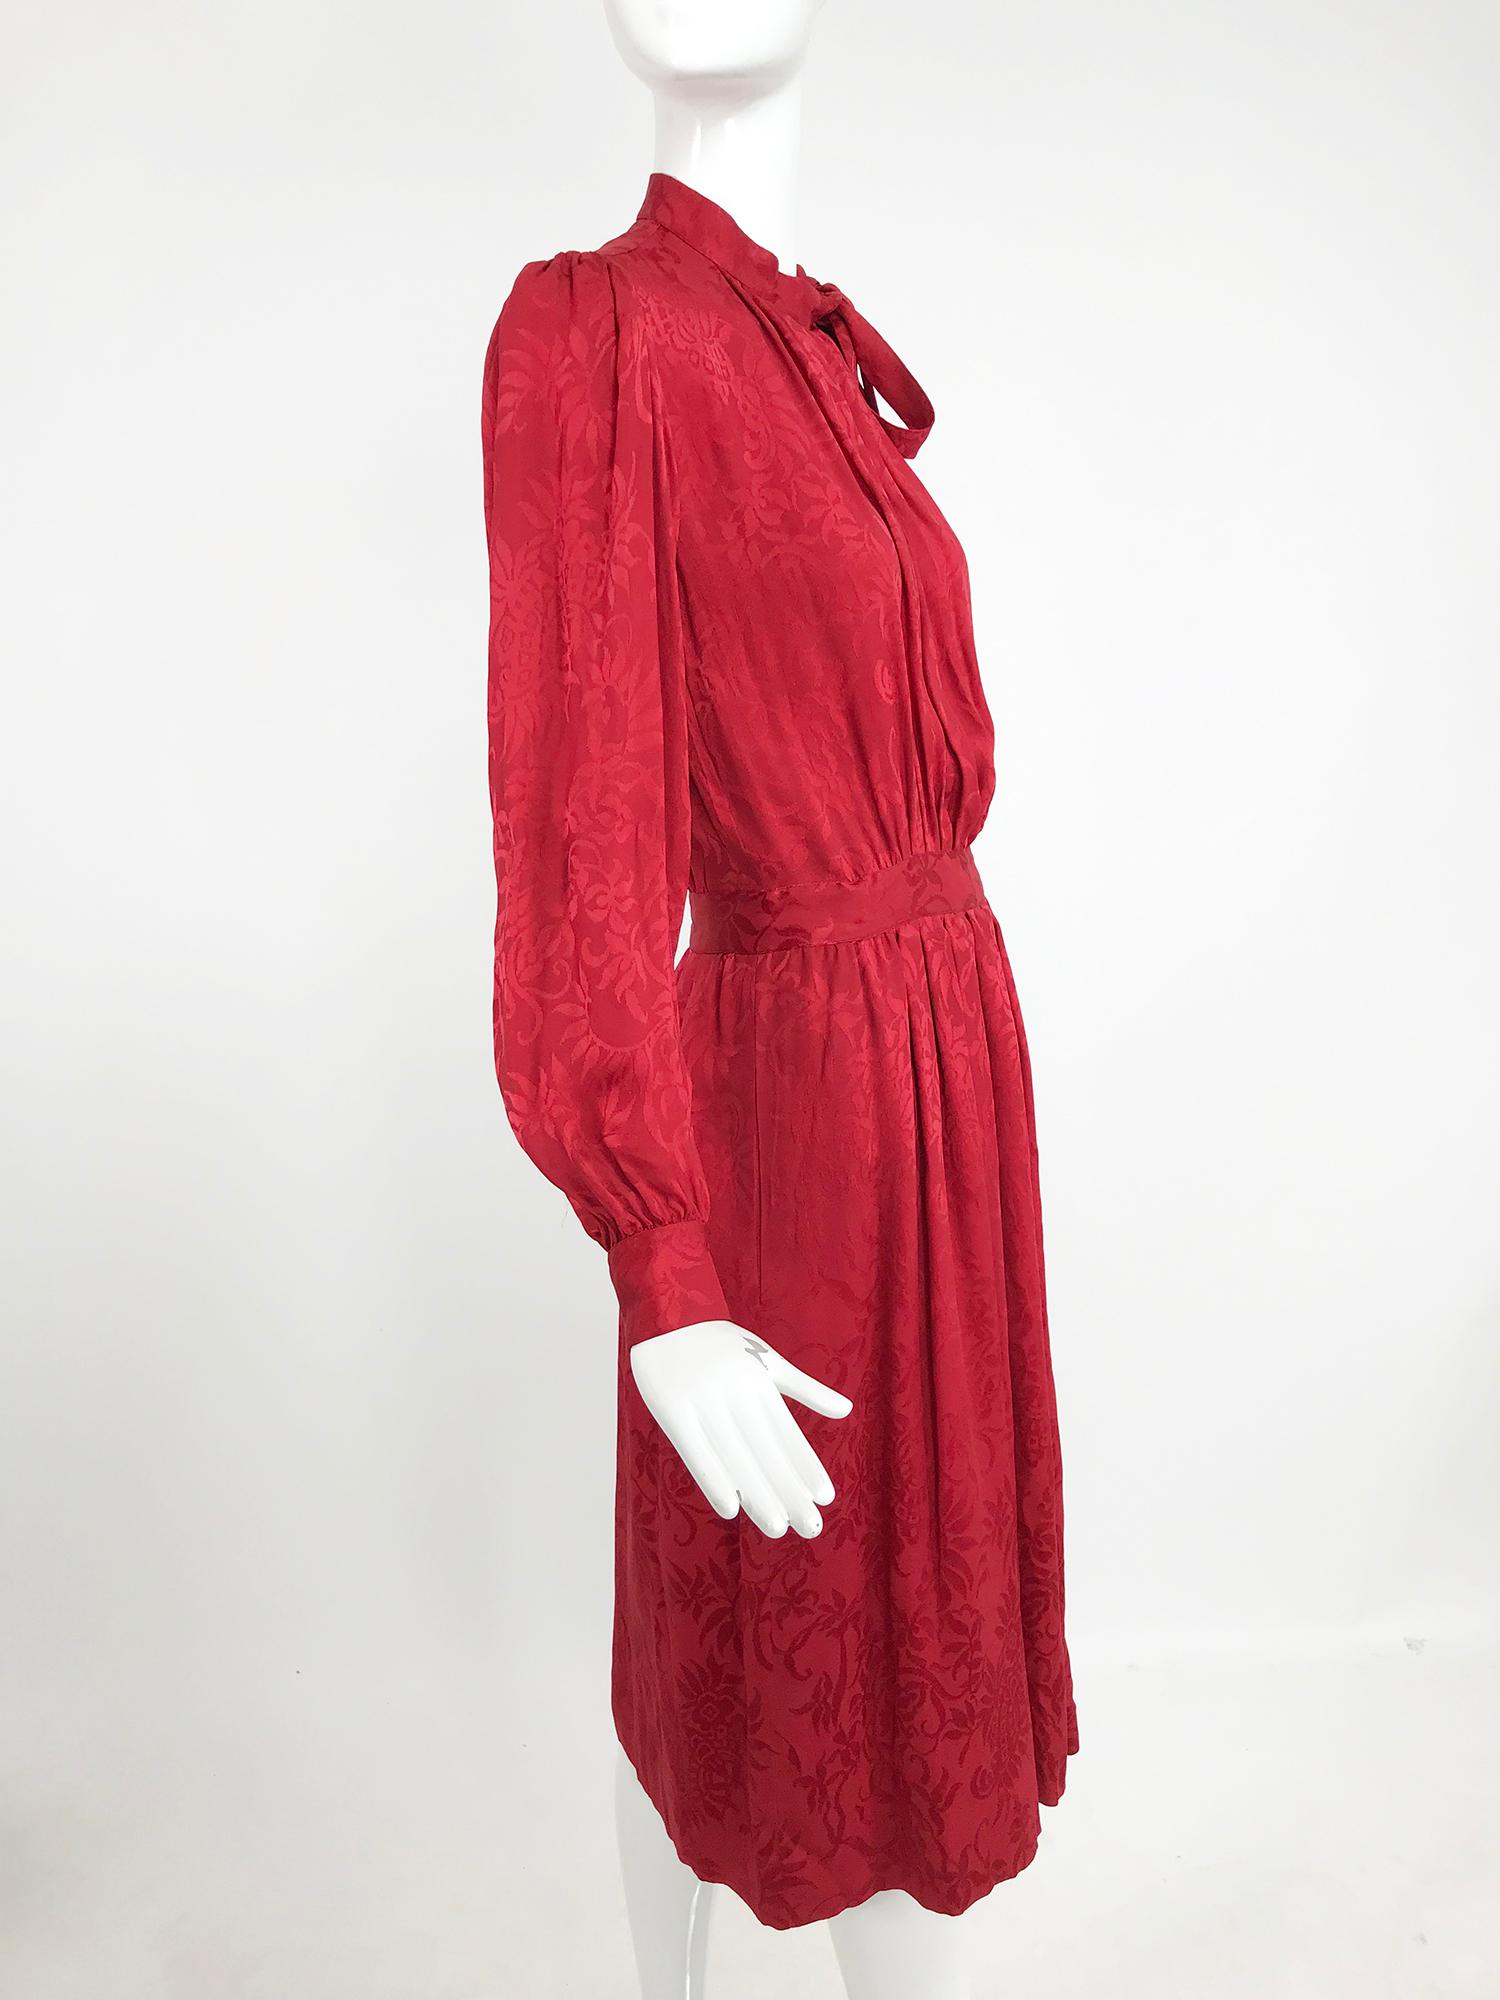 Yves Saint Laurent - Robe en jacquard de soie rouge avec nœud papillon, années 1970 1